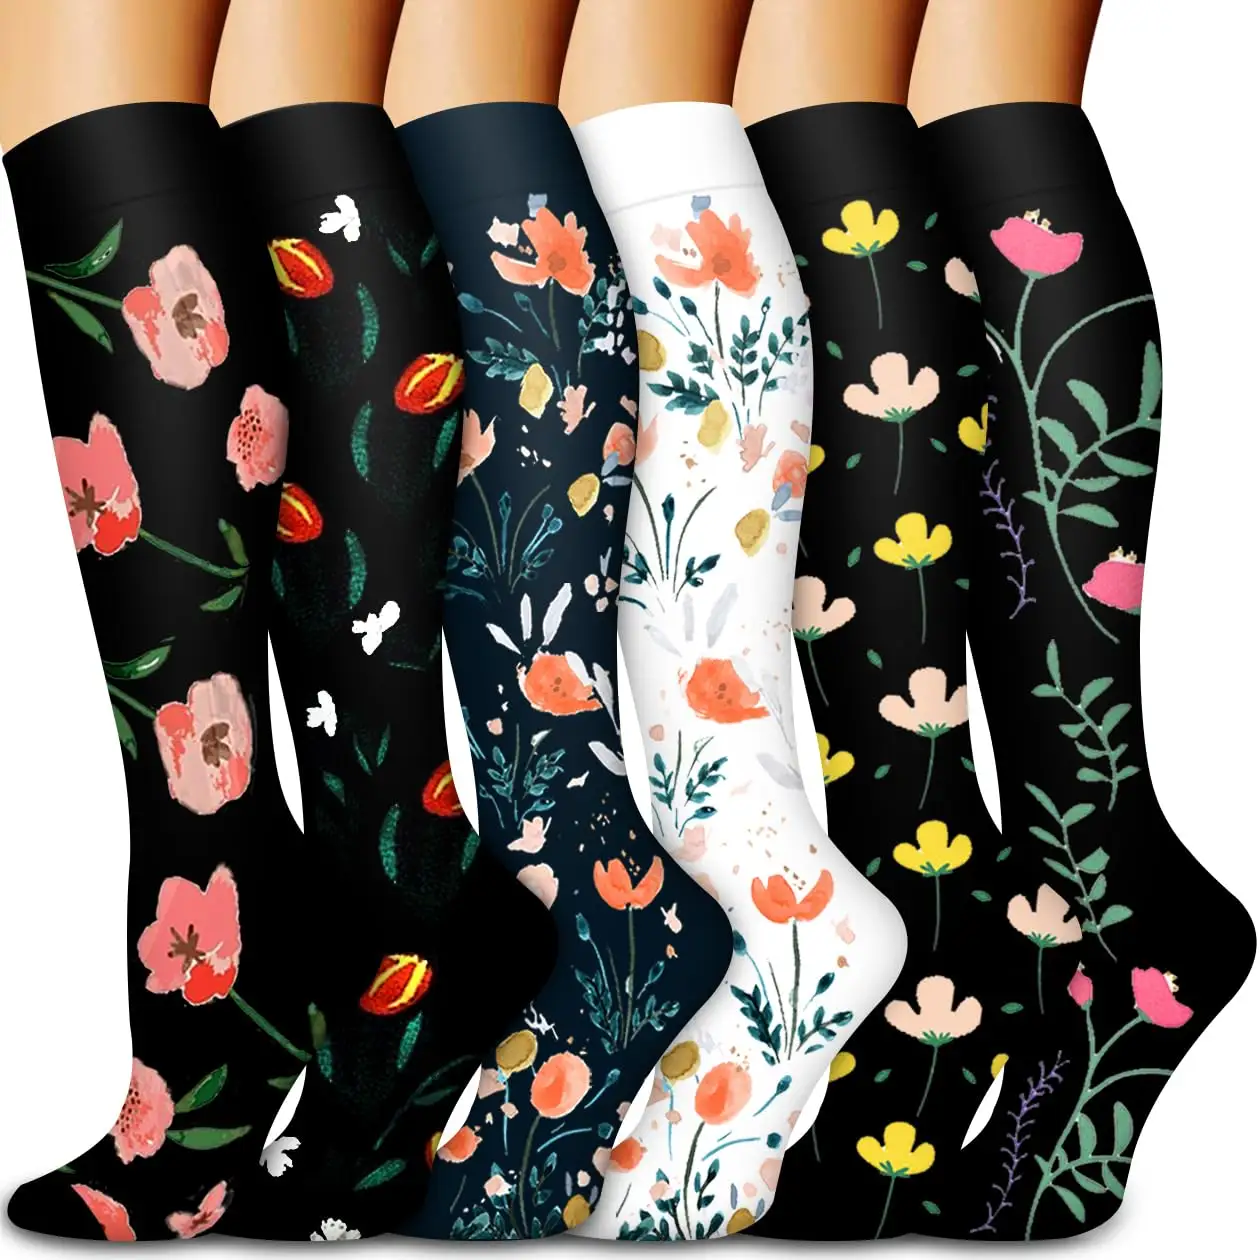 Custom Compression Socks 20-30 mmHg Long Socks for Women and Knee High Socks Best Support for Women